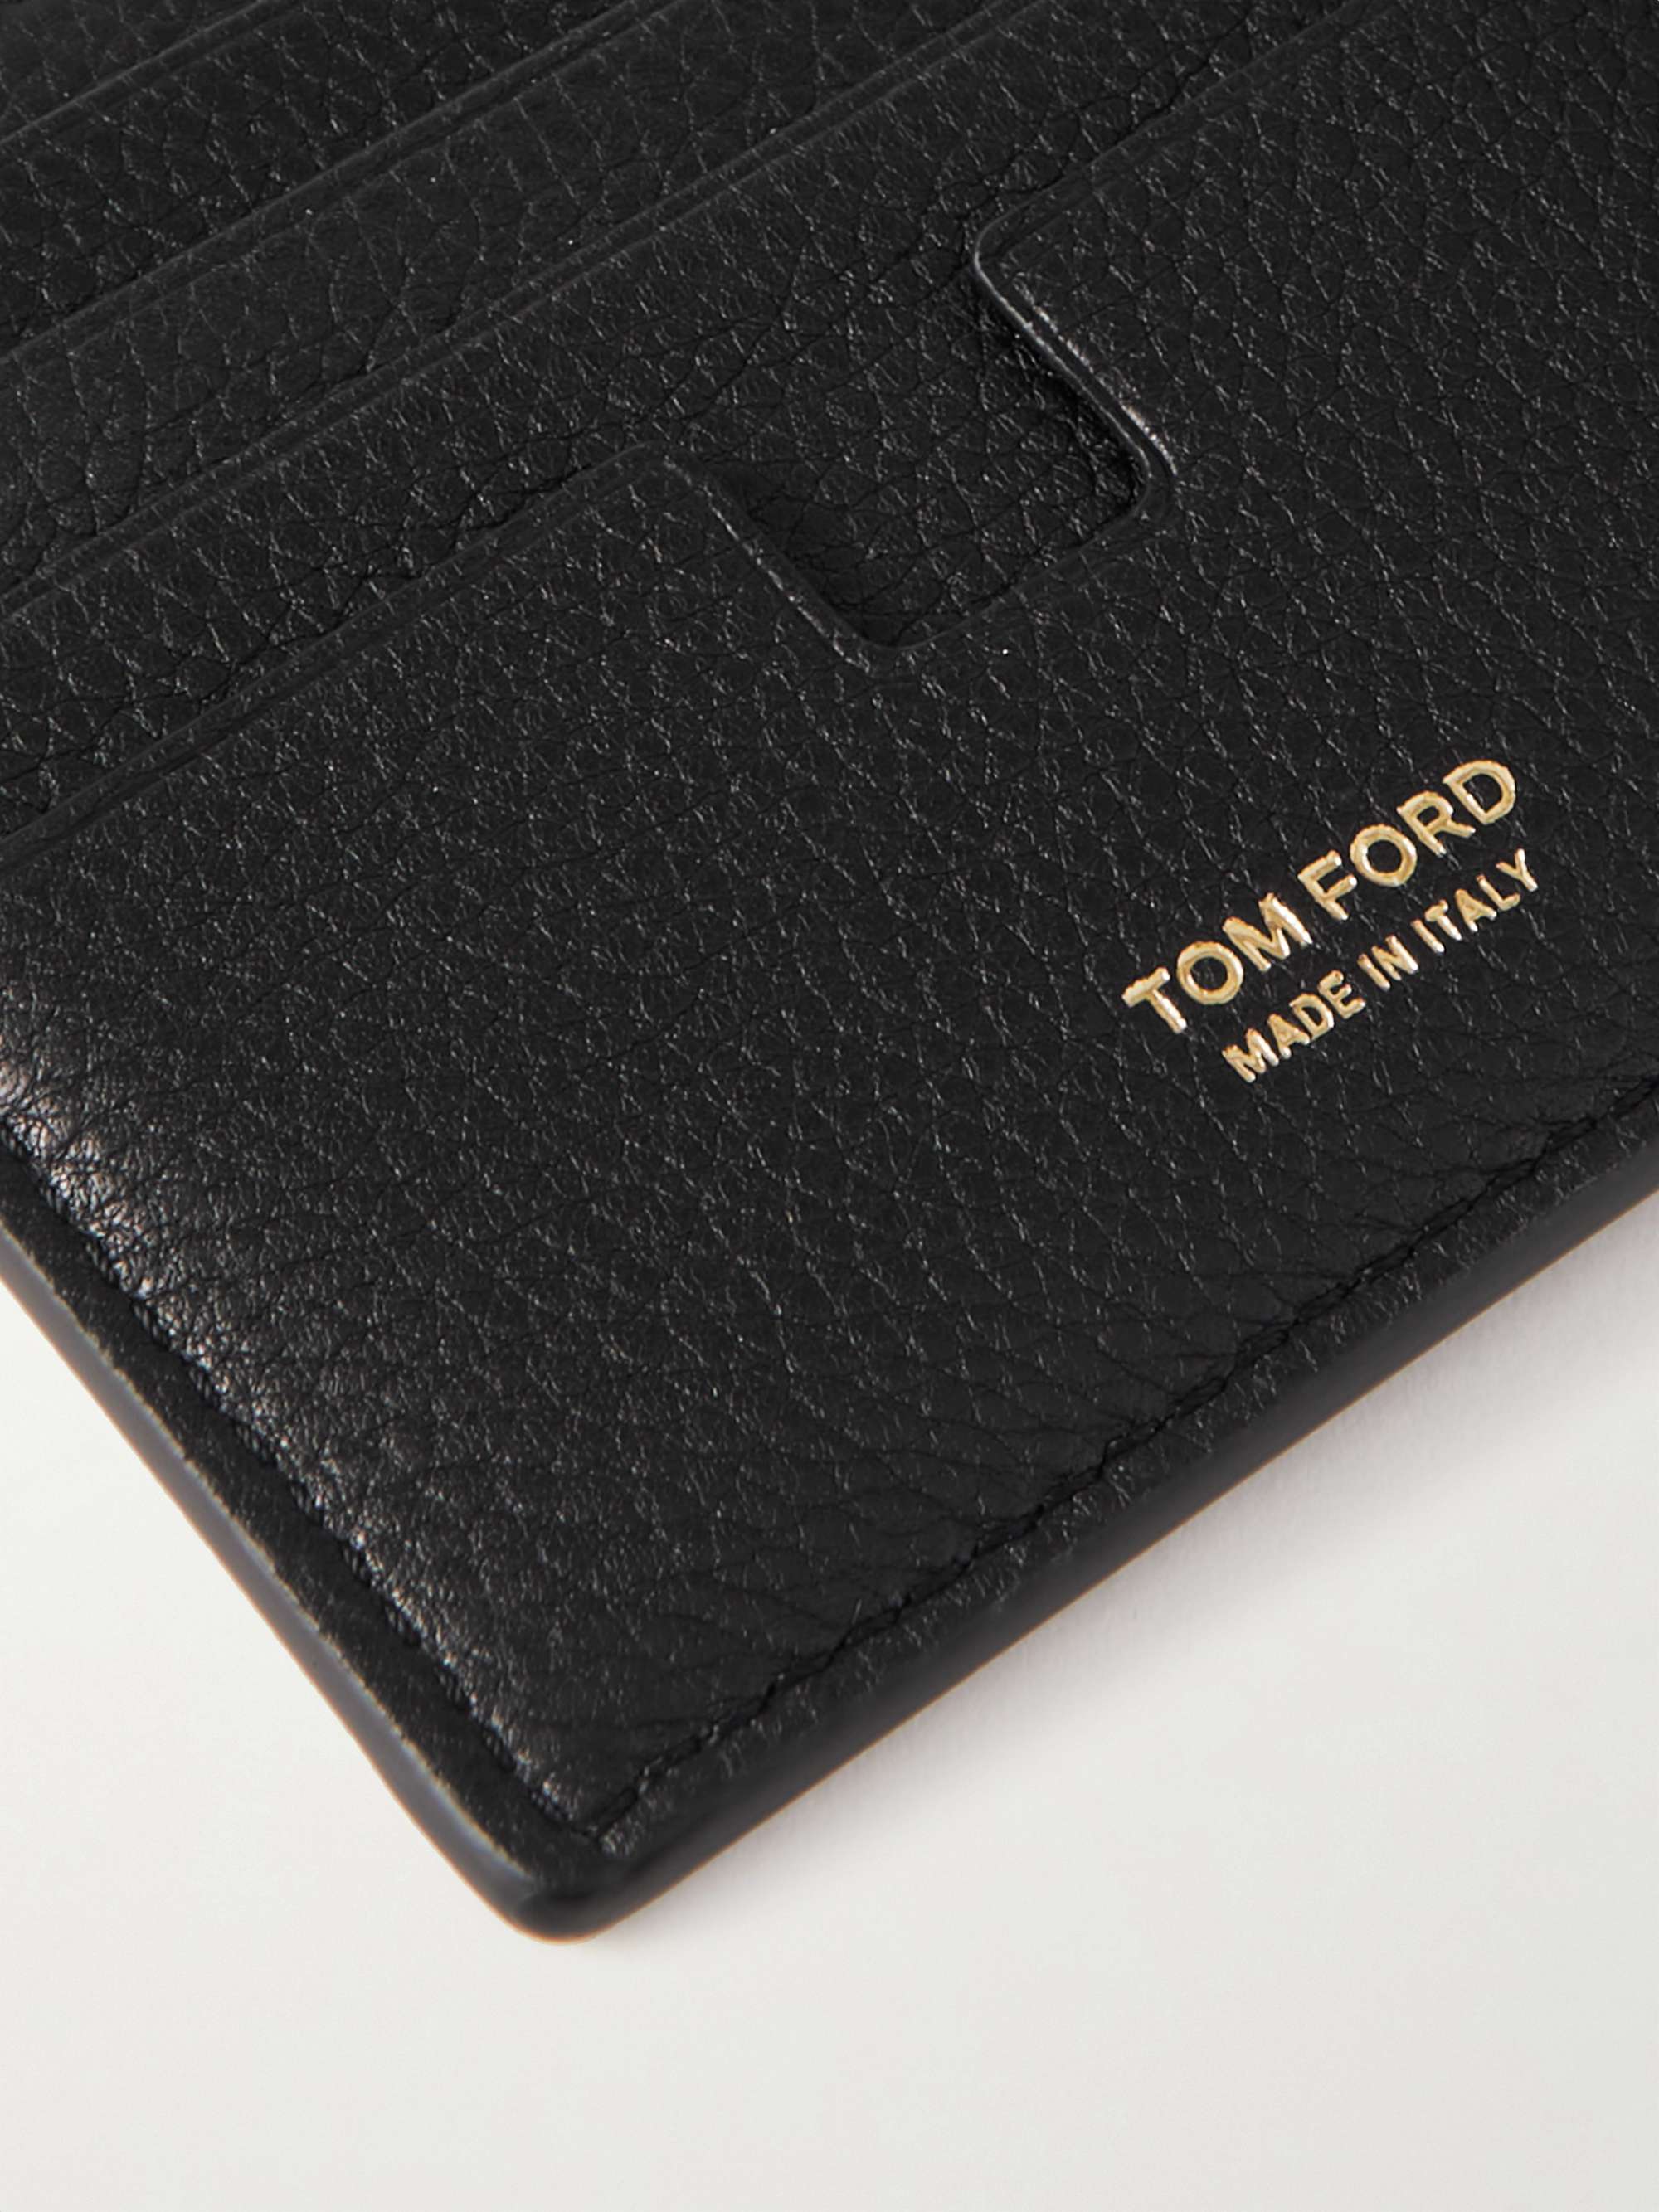 TOM FORD Full-Grain Leather Billfold Wallet